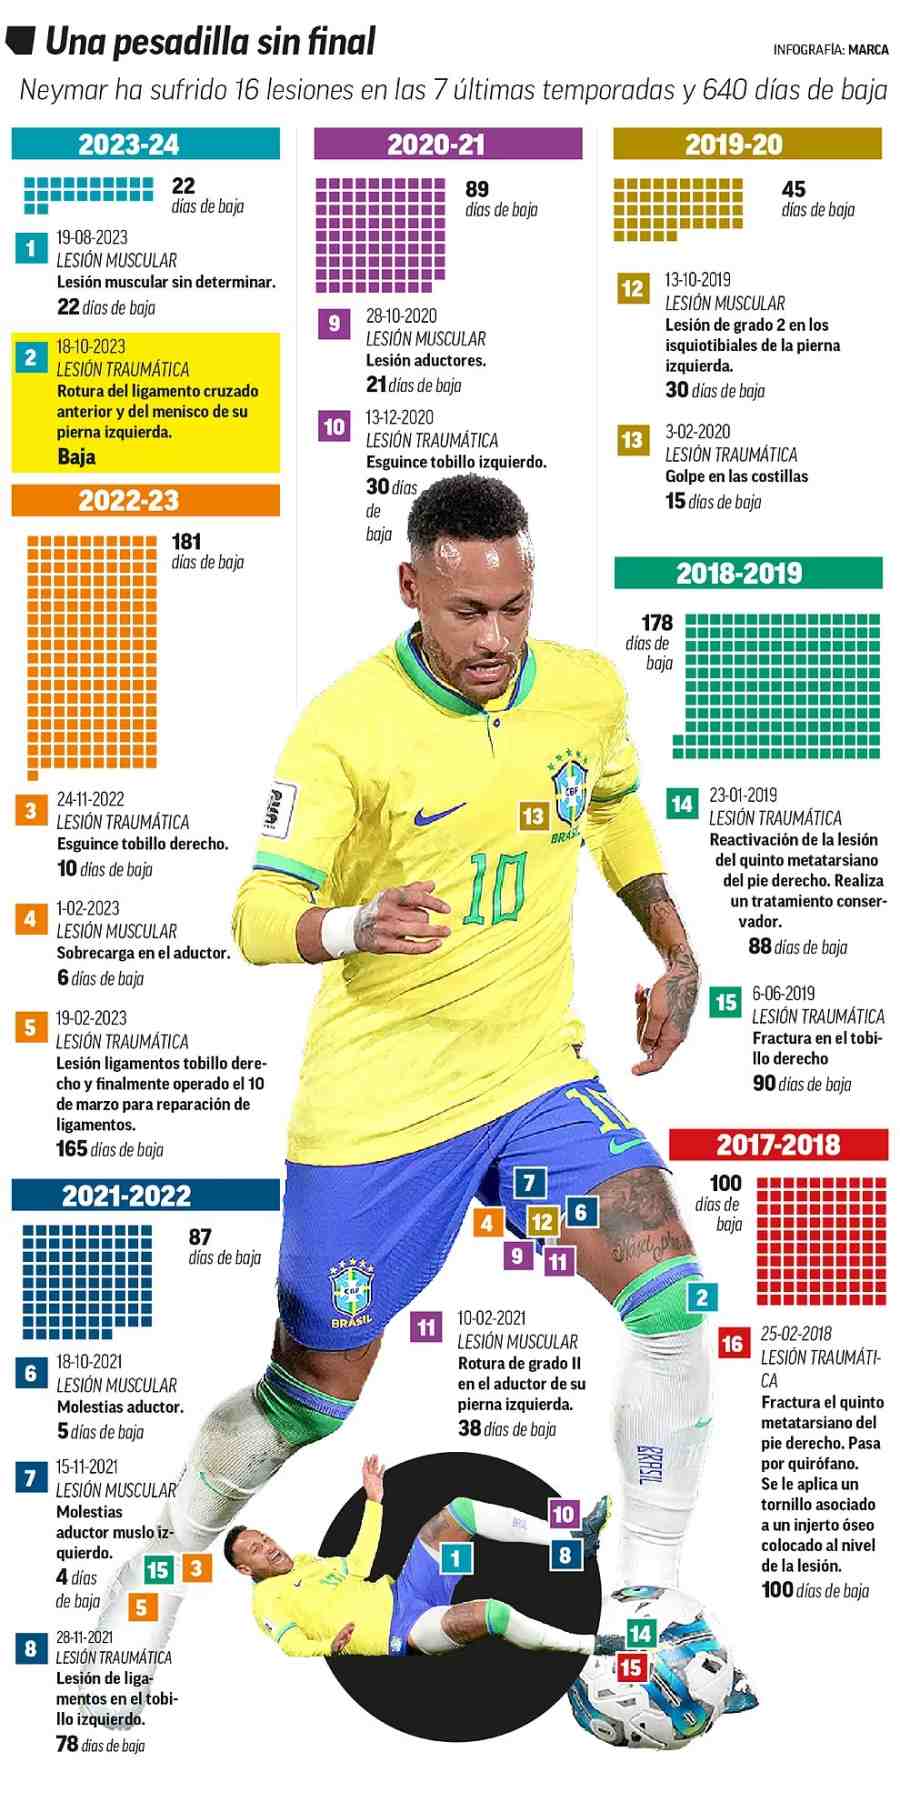 Neymar và những chấn thương trong 5 năm qua. Ảnh: Marca